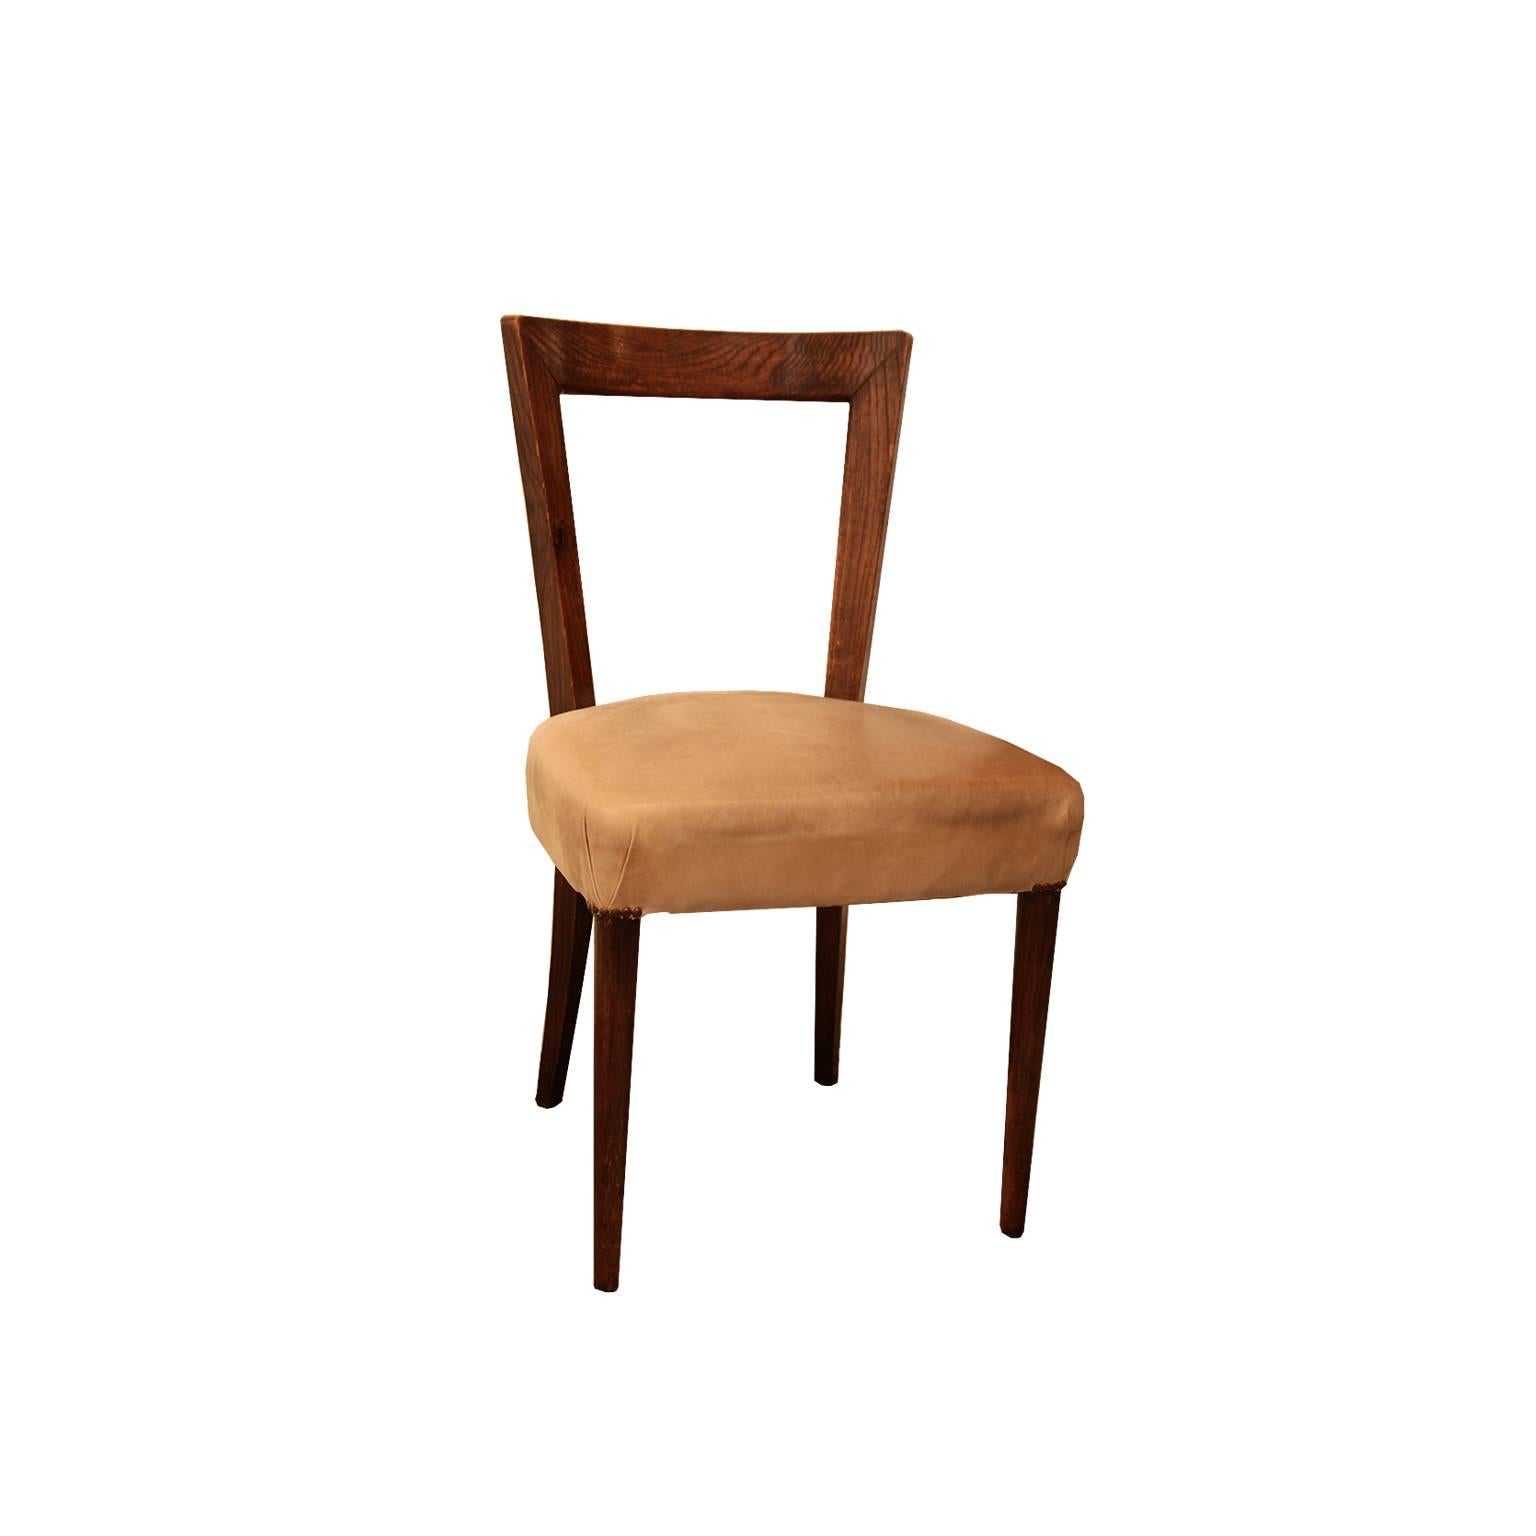 Stuhl mit klarem und einfachem Design, 1949 für das Haus der Tochter seiner Cousine Oda Gadda entworfen.
Bei diesem Stuhl kann man sehen, wie Portaluppi die Elemente, die er in den 1930er Jahren liebte (kleine Bögen, Stäbe in Form von Ziegeln und